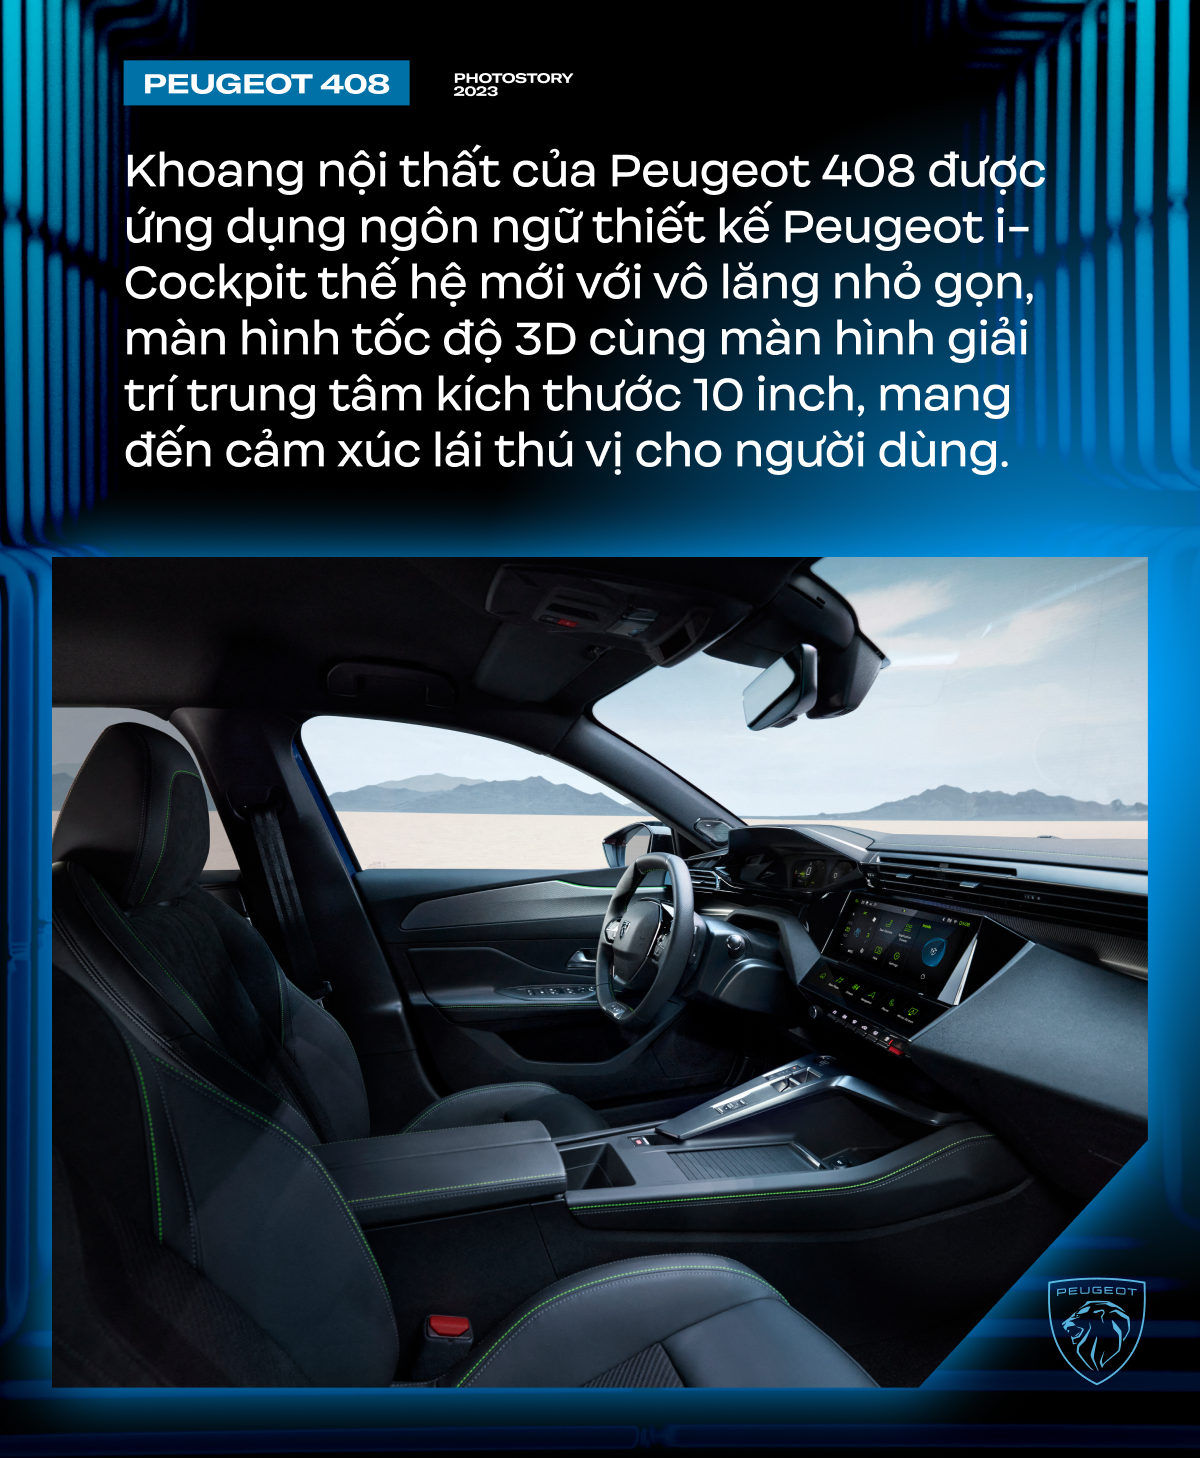 Peugeot 408 - Lựa chọn khác biệt cho người Việt ở phân khúc SUV hạng C- Ảnh 5.